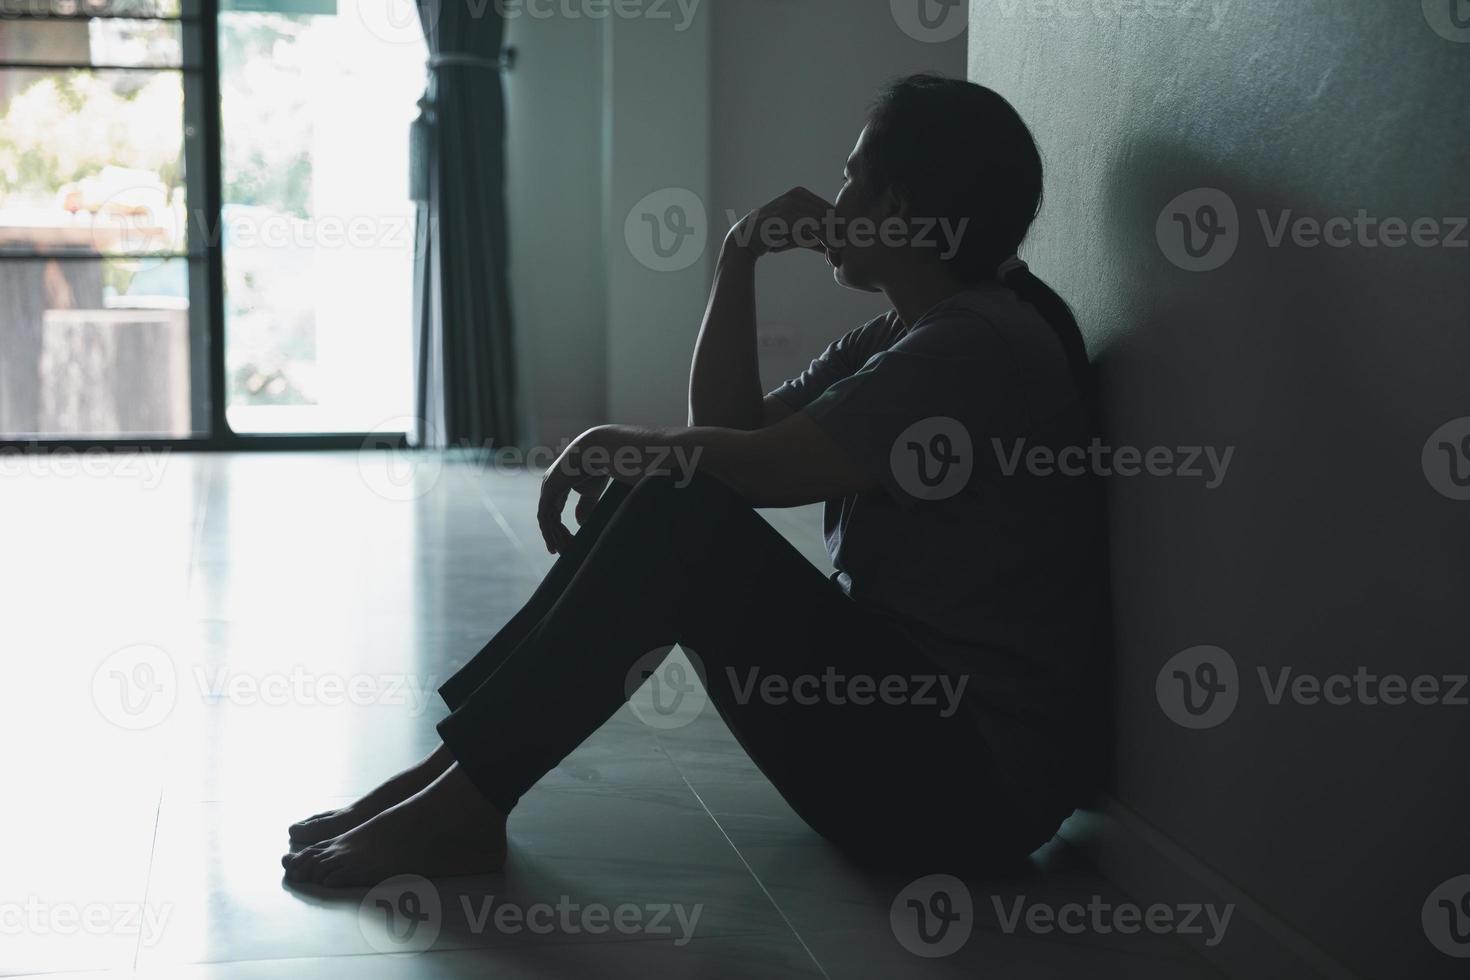 schizophrénie avec concept de dépression solitaire et triste en santé mentale. femme déprimée assise contre le mur à la maison avec une ombre sur le mur se sentant misérable. les femmes sont déprimées, craintives et malheureuses. photo